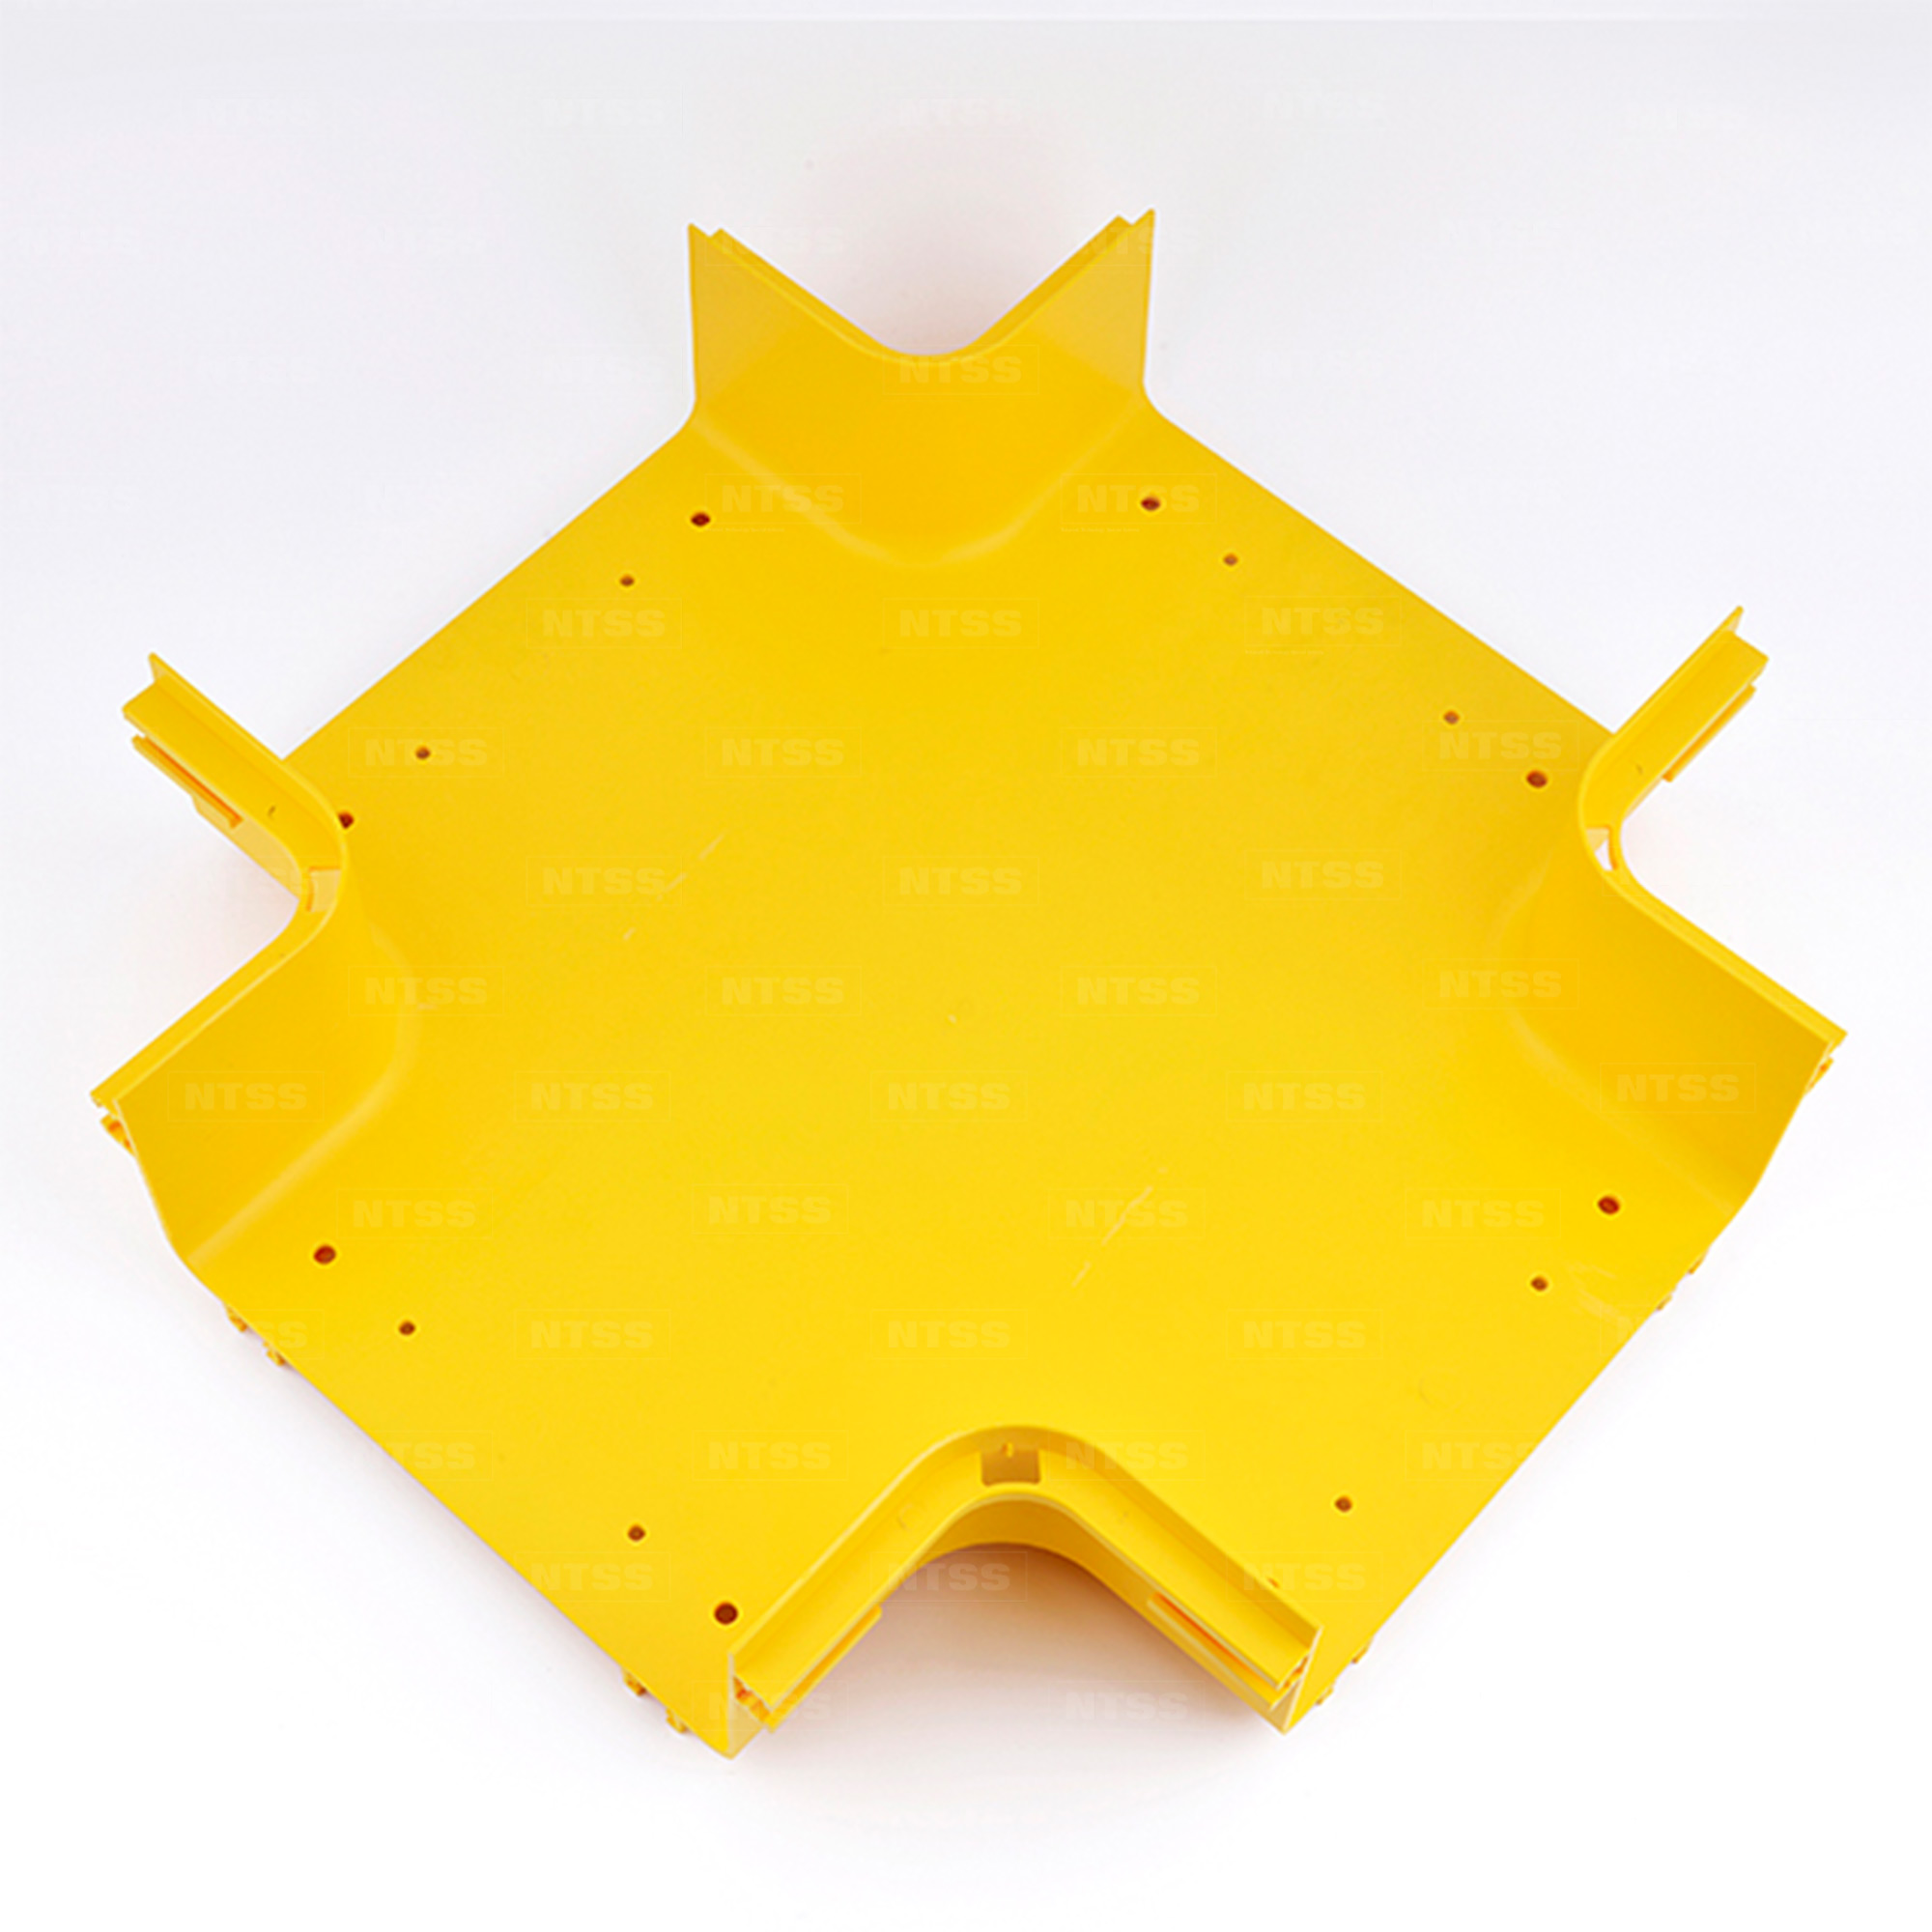 Х-соединитель оптического лотка 240x100 мм, желтый